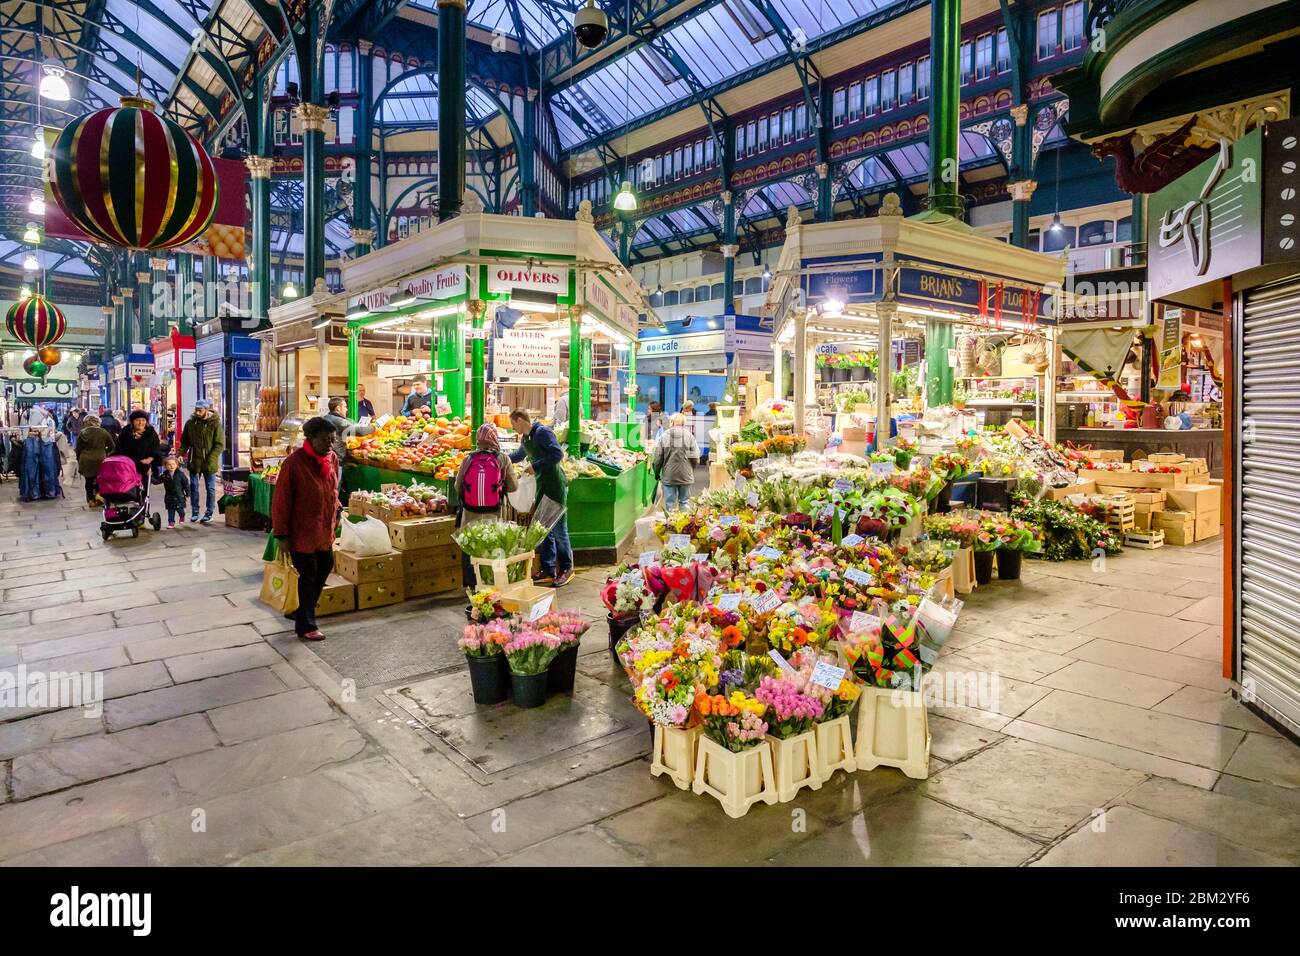 Vue intérieure du marché intérieur de Leeds Kirkgate, avec ses étals de fleurs et de légumes et son arc victorien, dont le toit en verre Banque D'Images